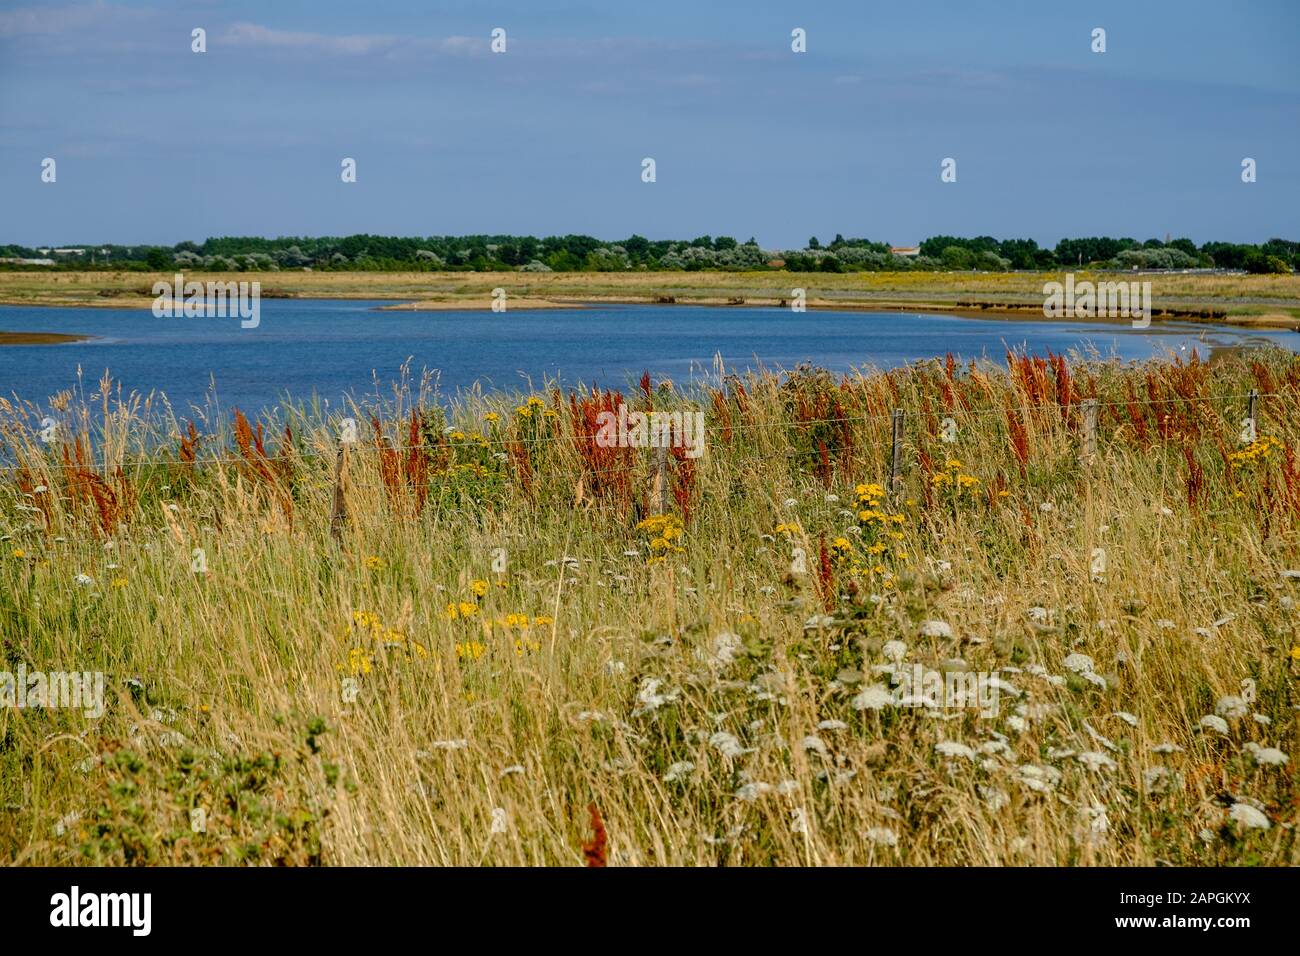 Teich & Wildgräser im Medmerry Nature Reserve, einem Hochwasserschutzsystem der Umweltbehörde in Sidlesham, West Sussex, England. Stockfoto